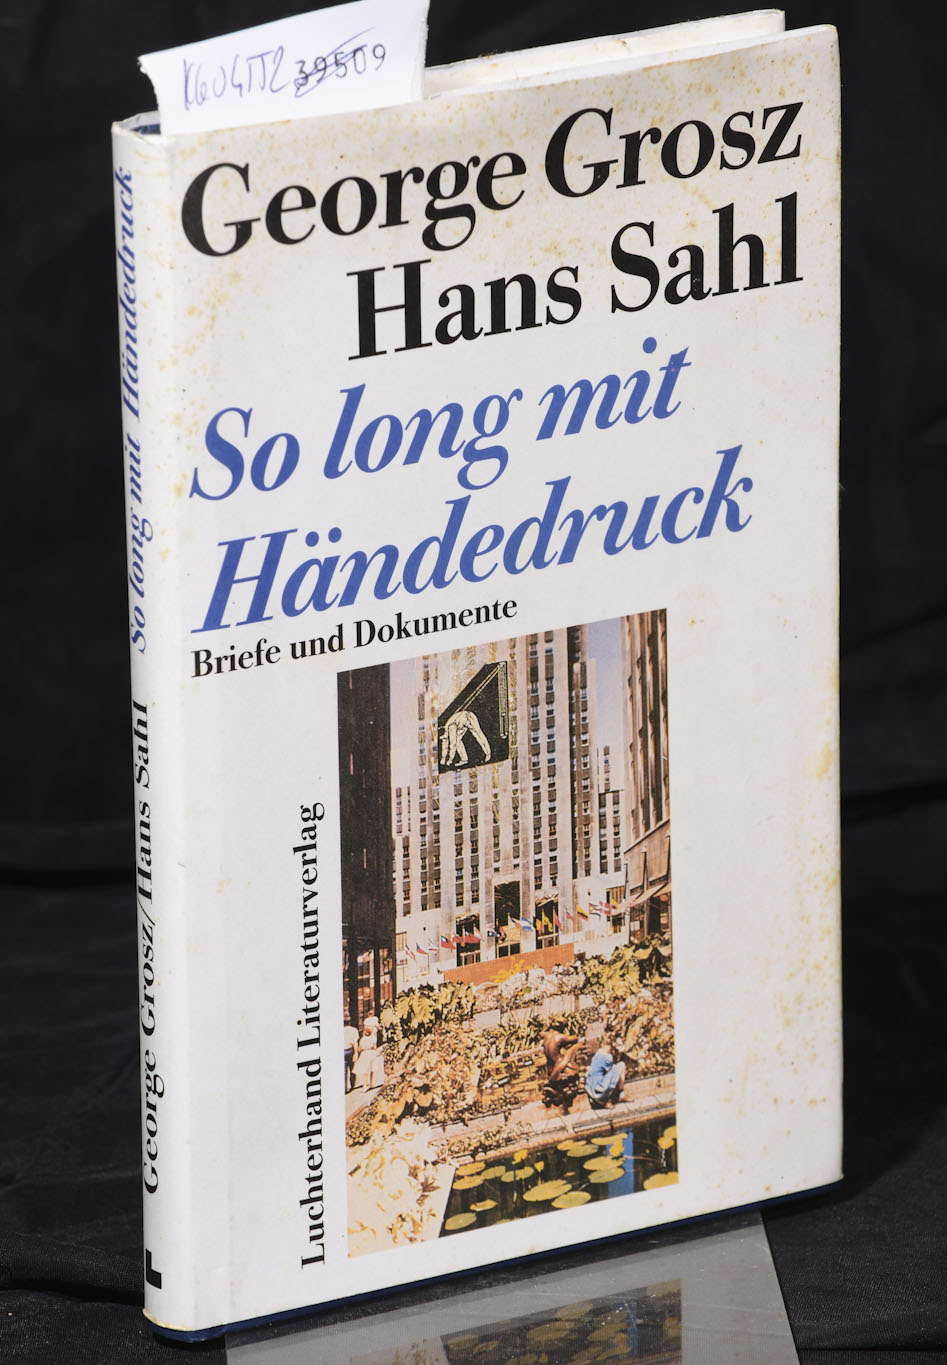 So long mit Händedruck - Briefe und Dokumente herausgegeben von Karl Riha - Grosz George, Sahl Hans